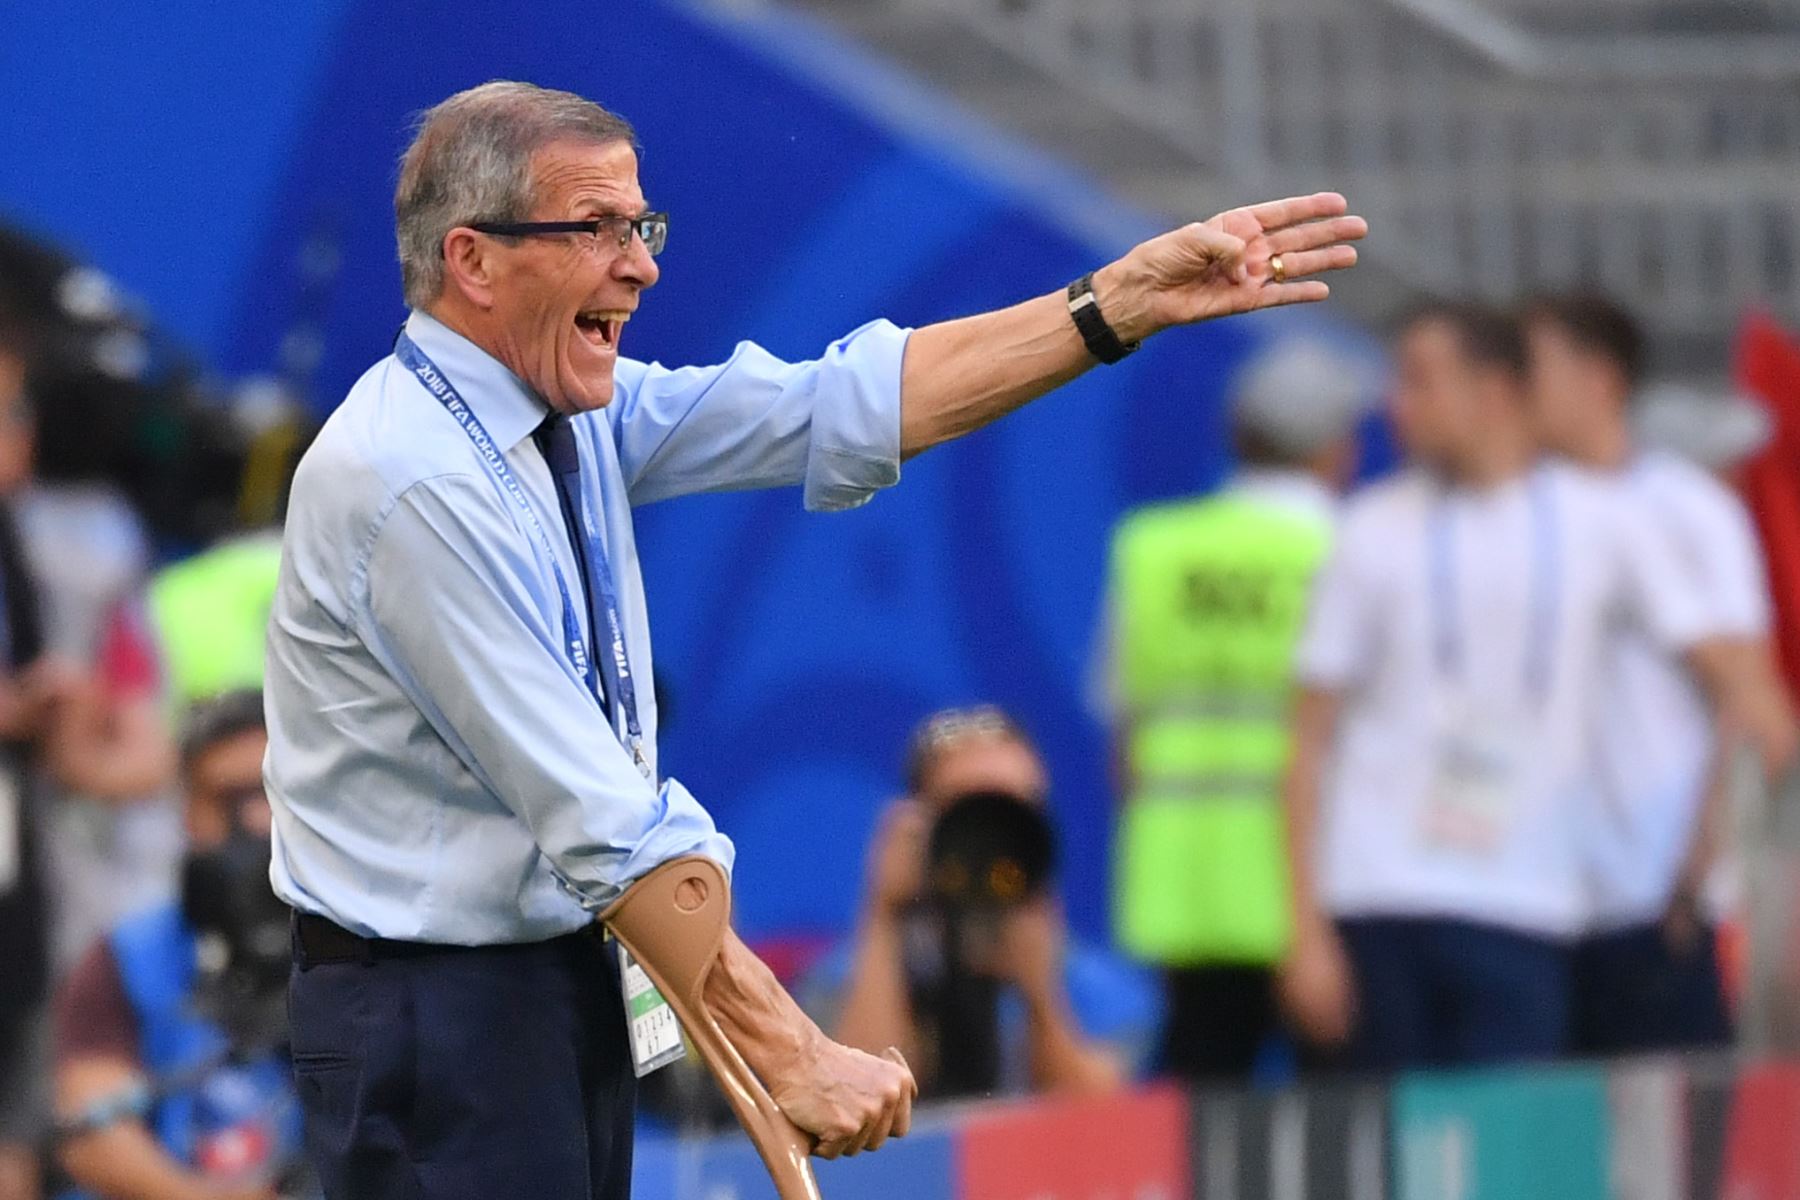 El entrenador uruguayo Oscar Washington Tabarez reacciona durante el partido de fútbol del Grupo A de la Copa Mundial Rusia 2018 entre Uruguay y Rusia en el Samara Arena de Samara el 25 de junio de 2018. / AFP